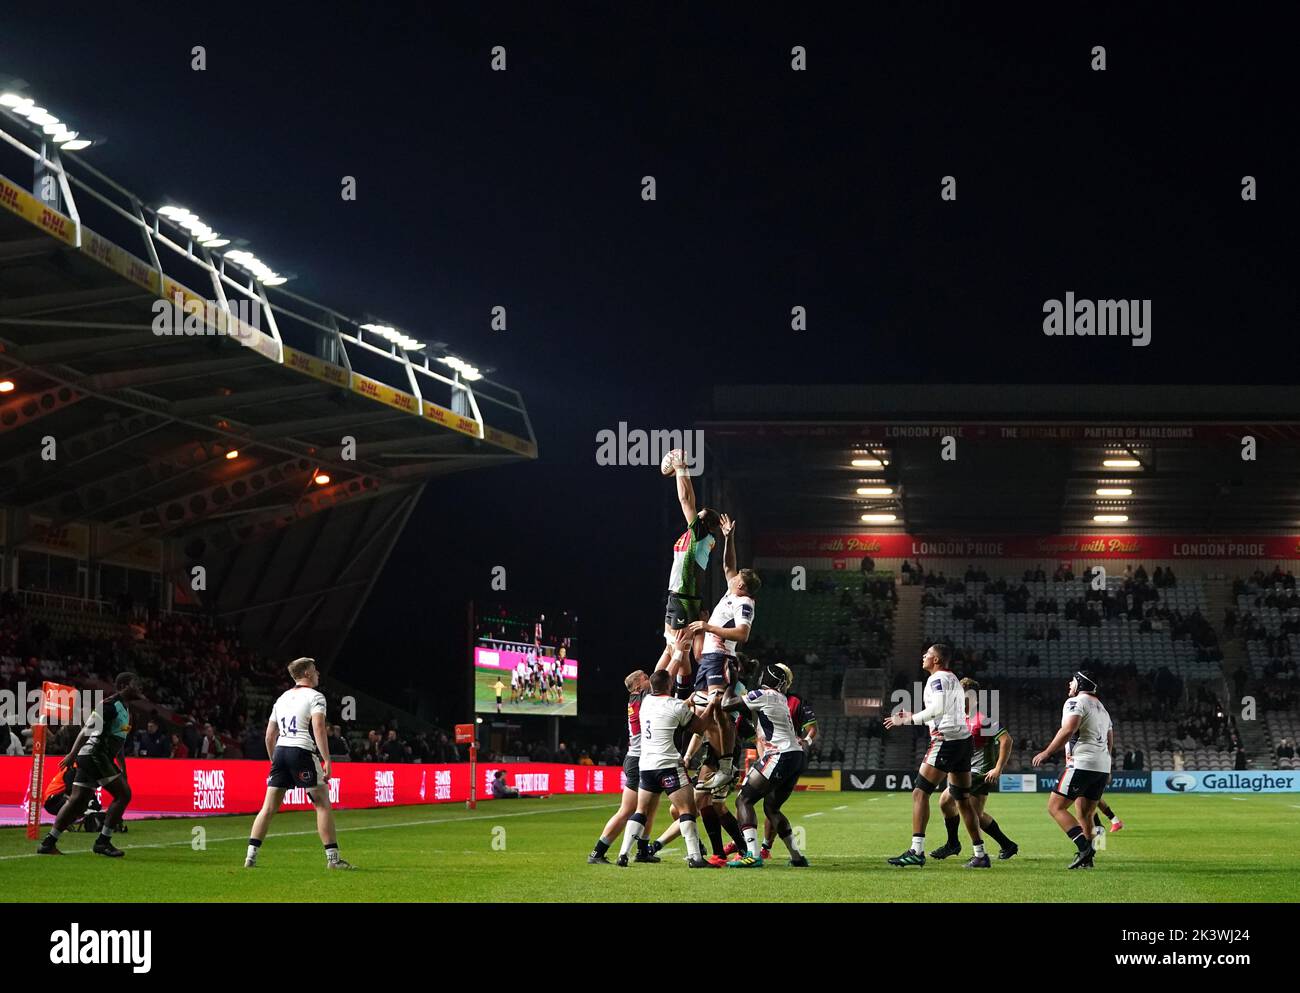 I giocatori eseguono una line-out durante il secondo round della Premiership Rugby Cup al Twickenham Stoop, Londra. Data immagine: Mercoledì 28 settembre 2022. Foto Stock